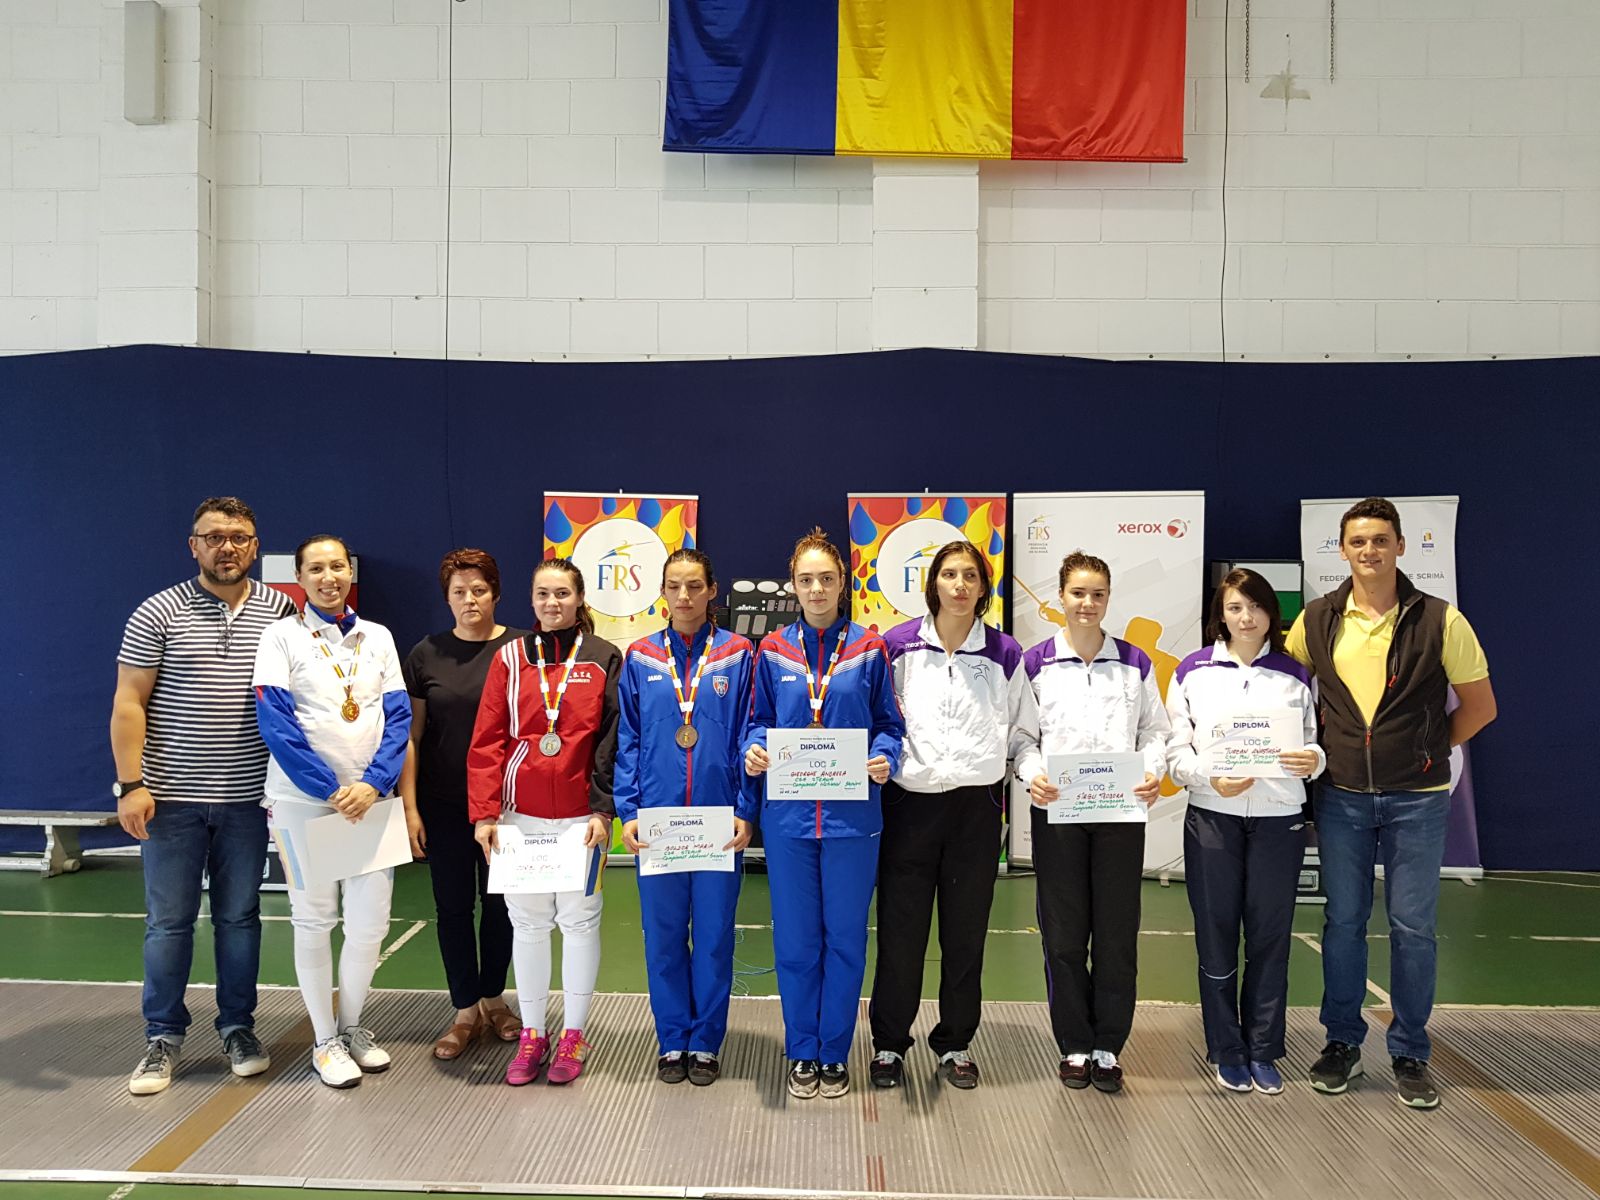 Campionatul Național de floretă seniori de la București, ediția 2018 (7-10 mai 2018)